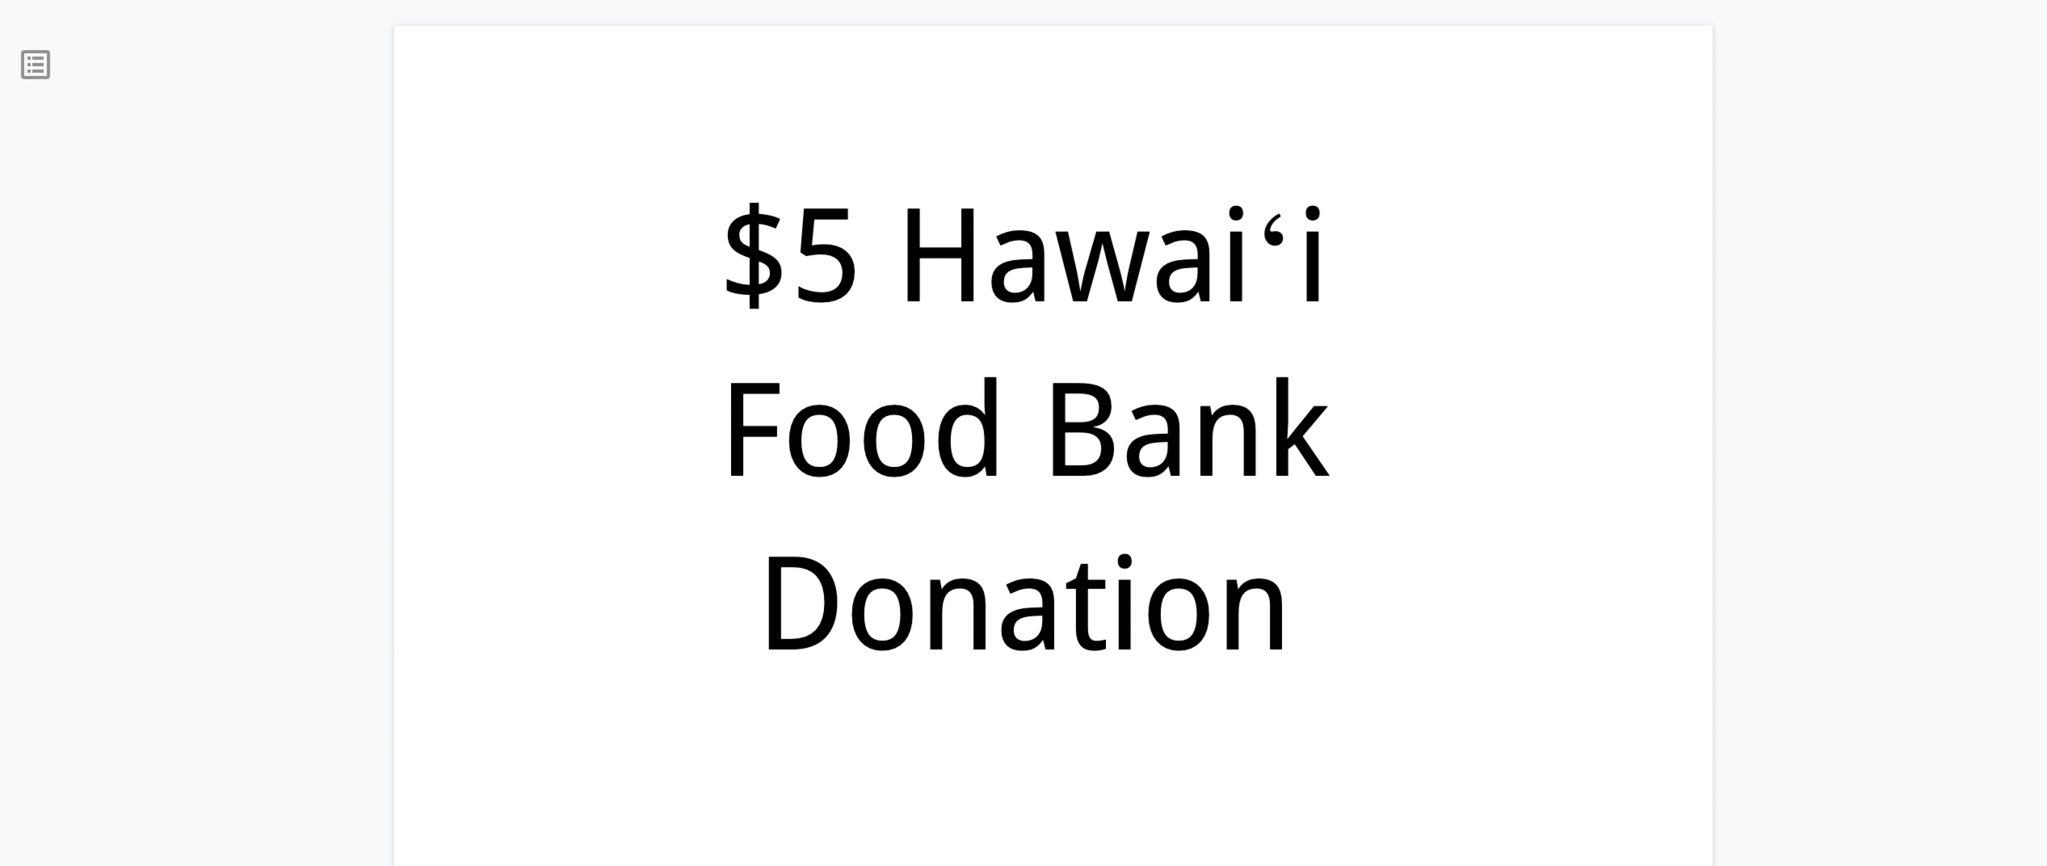 Hawaii Food Bank $5 Donation